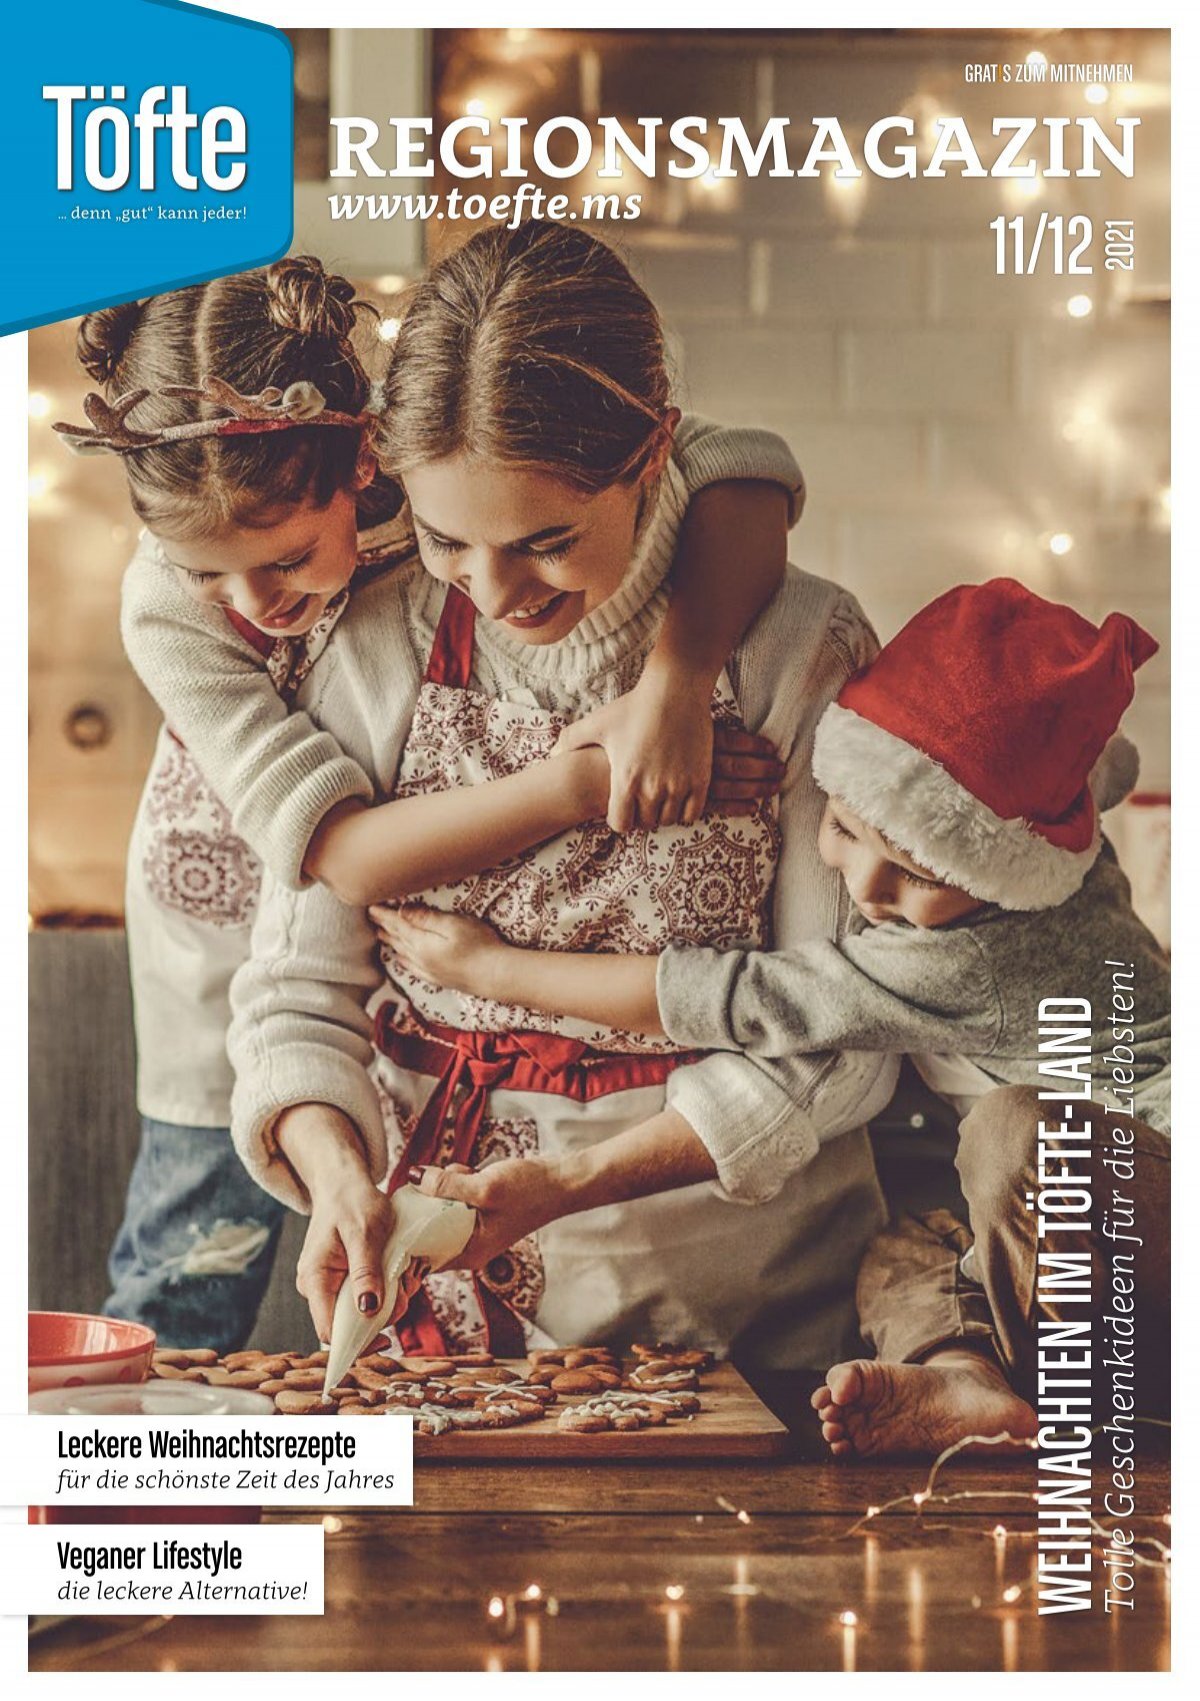 Töfte Regionsmagazin 12/2021 - Weihnachtszeit im Töfte-Land